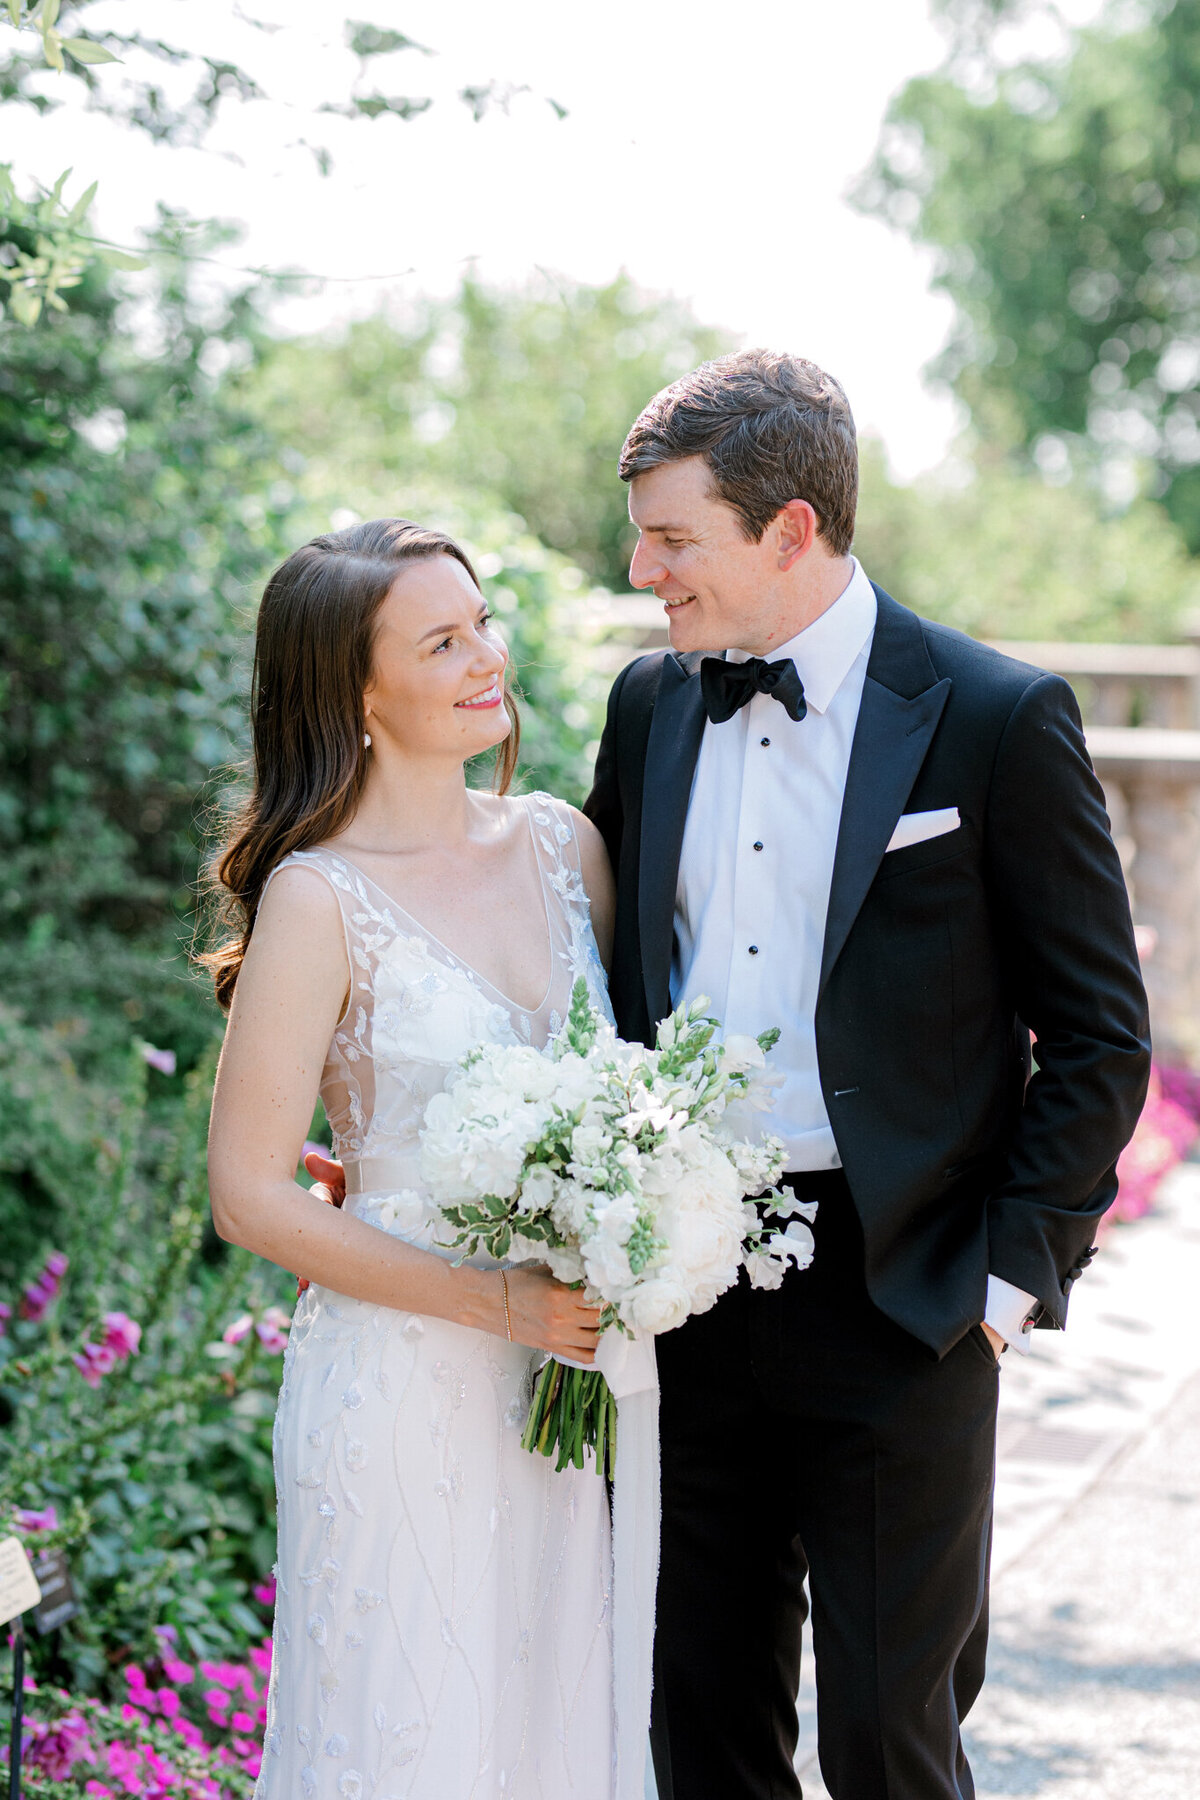 Gena & Matt's Wedding at the Dallas Arboretum | Dallas Wedding Photographer | Sami Kathryn Photography-94